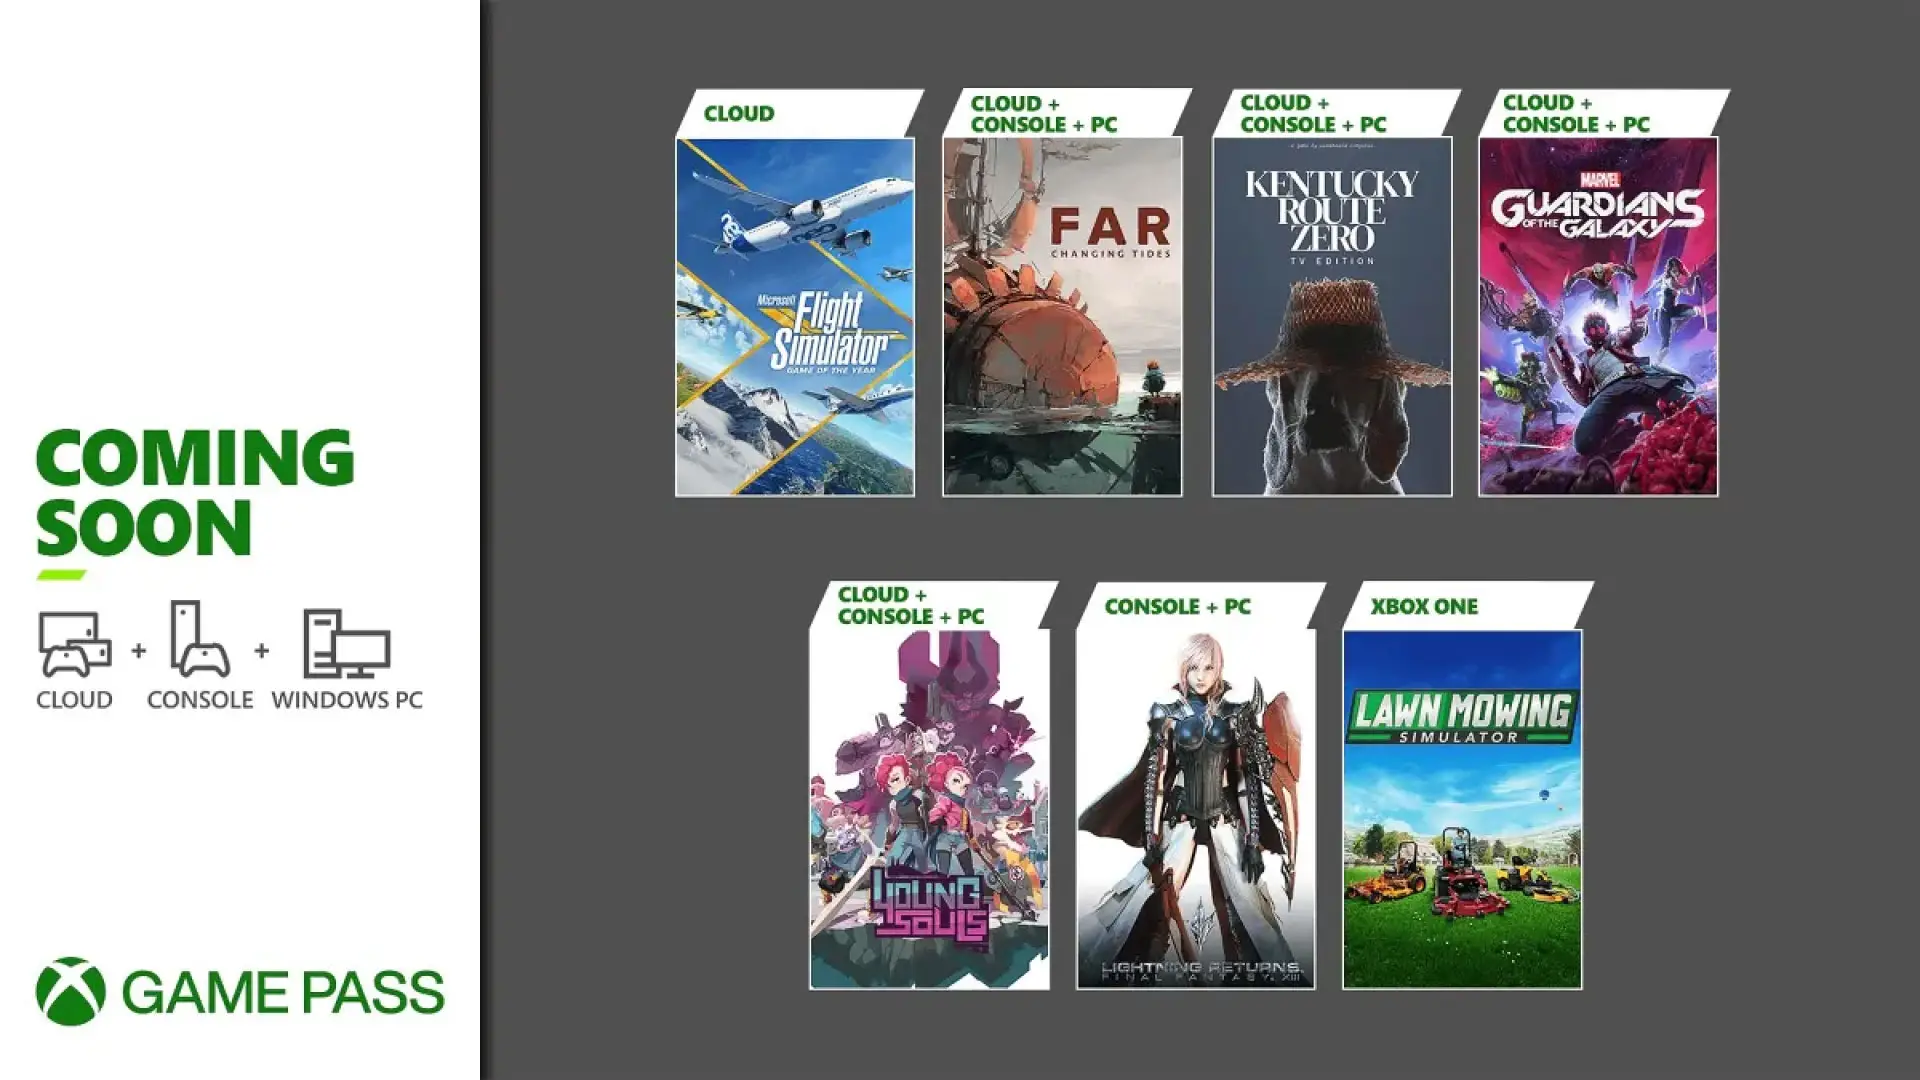 Próxima semana no Xbox: 10 a 14 de janeiro - Xbox Wire em Português